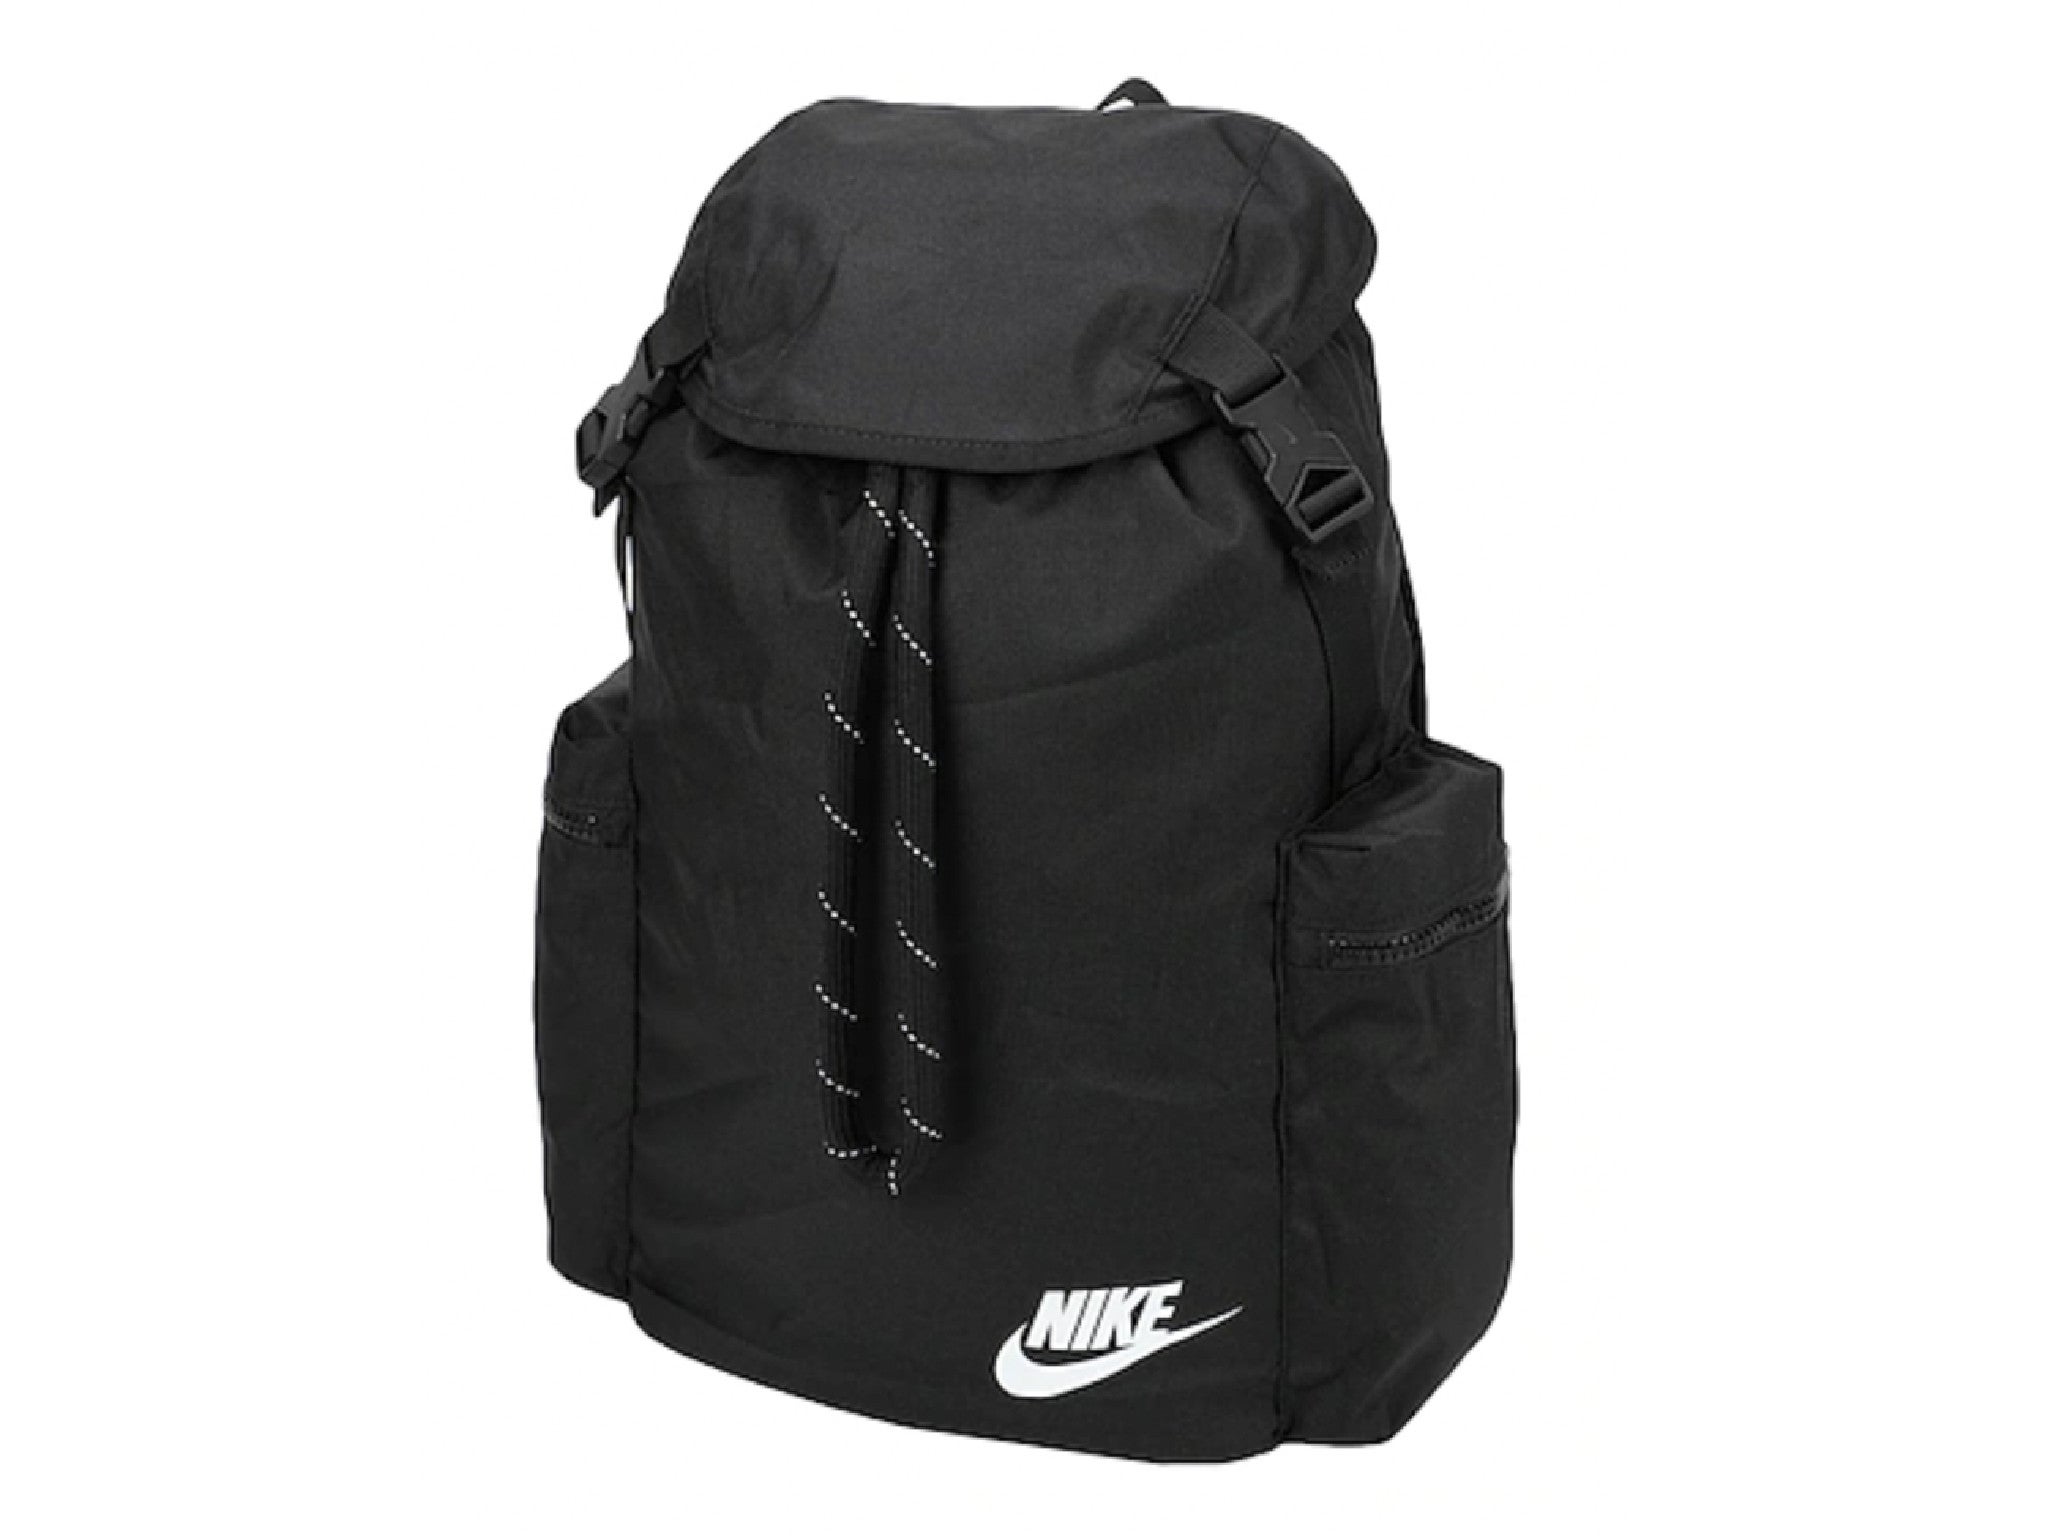 Nike heritage rucksack